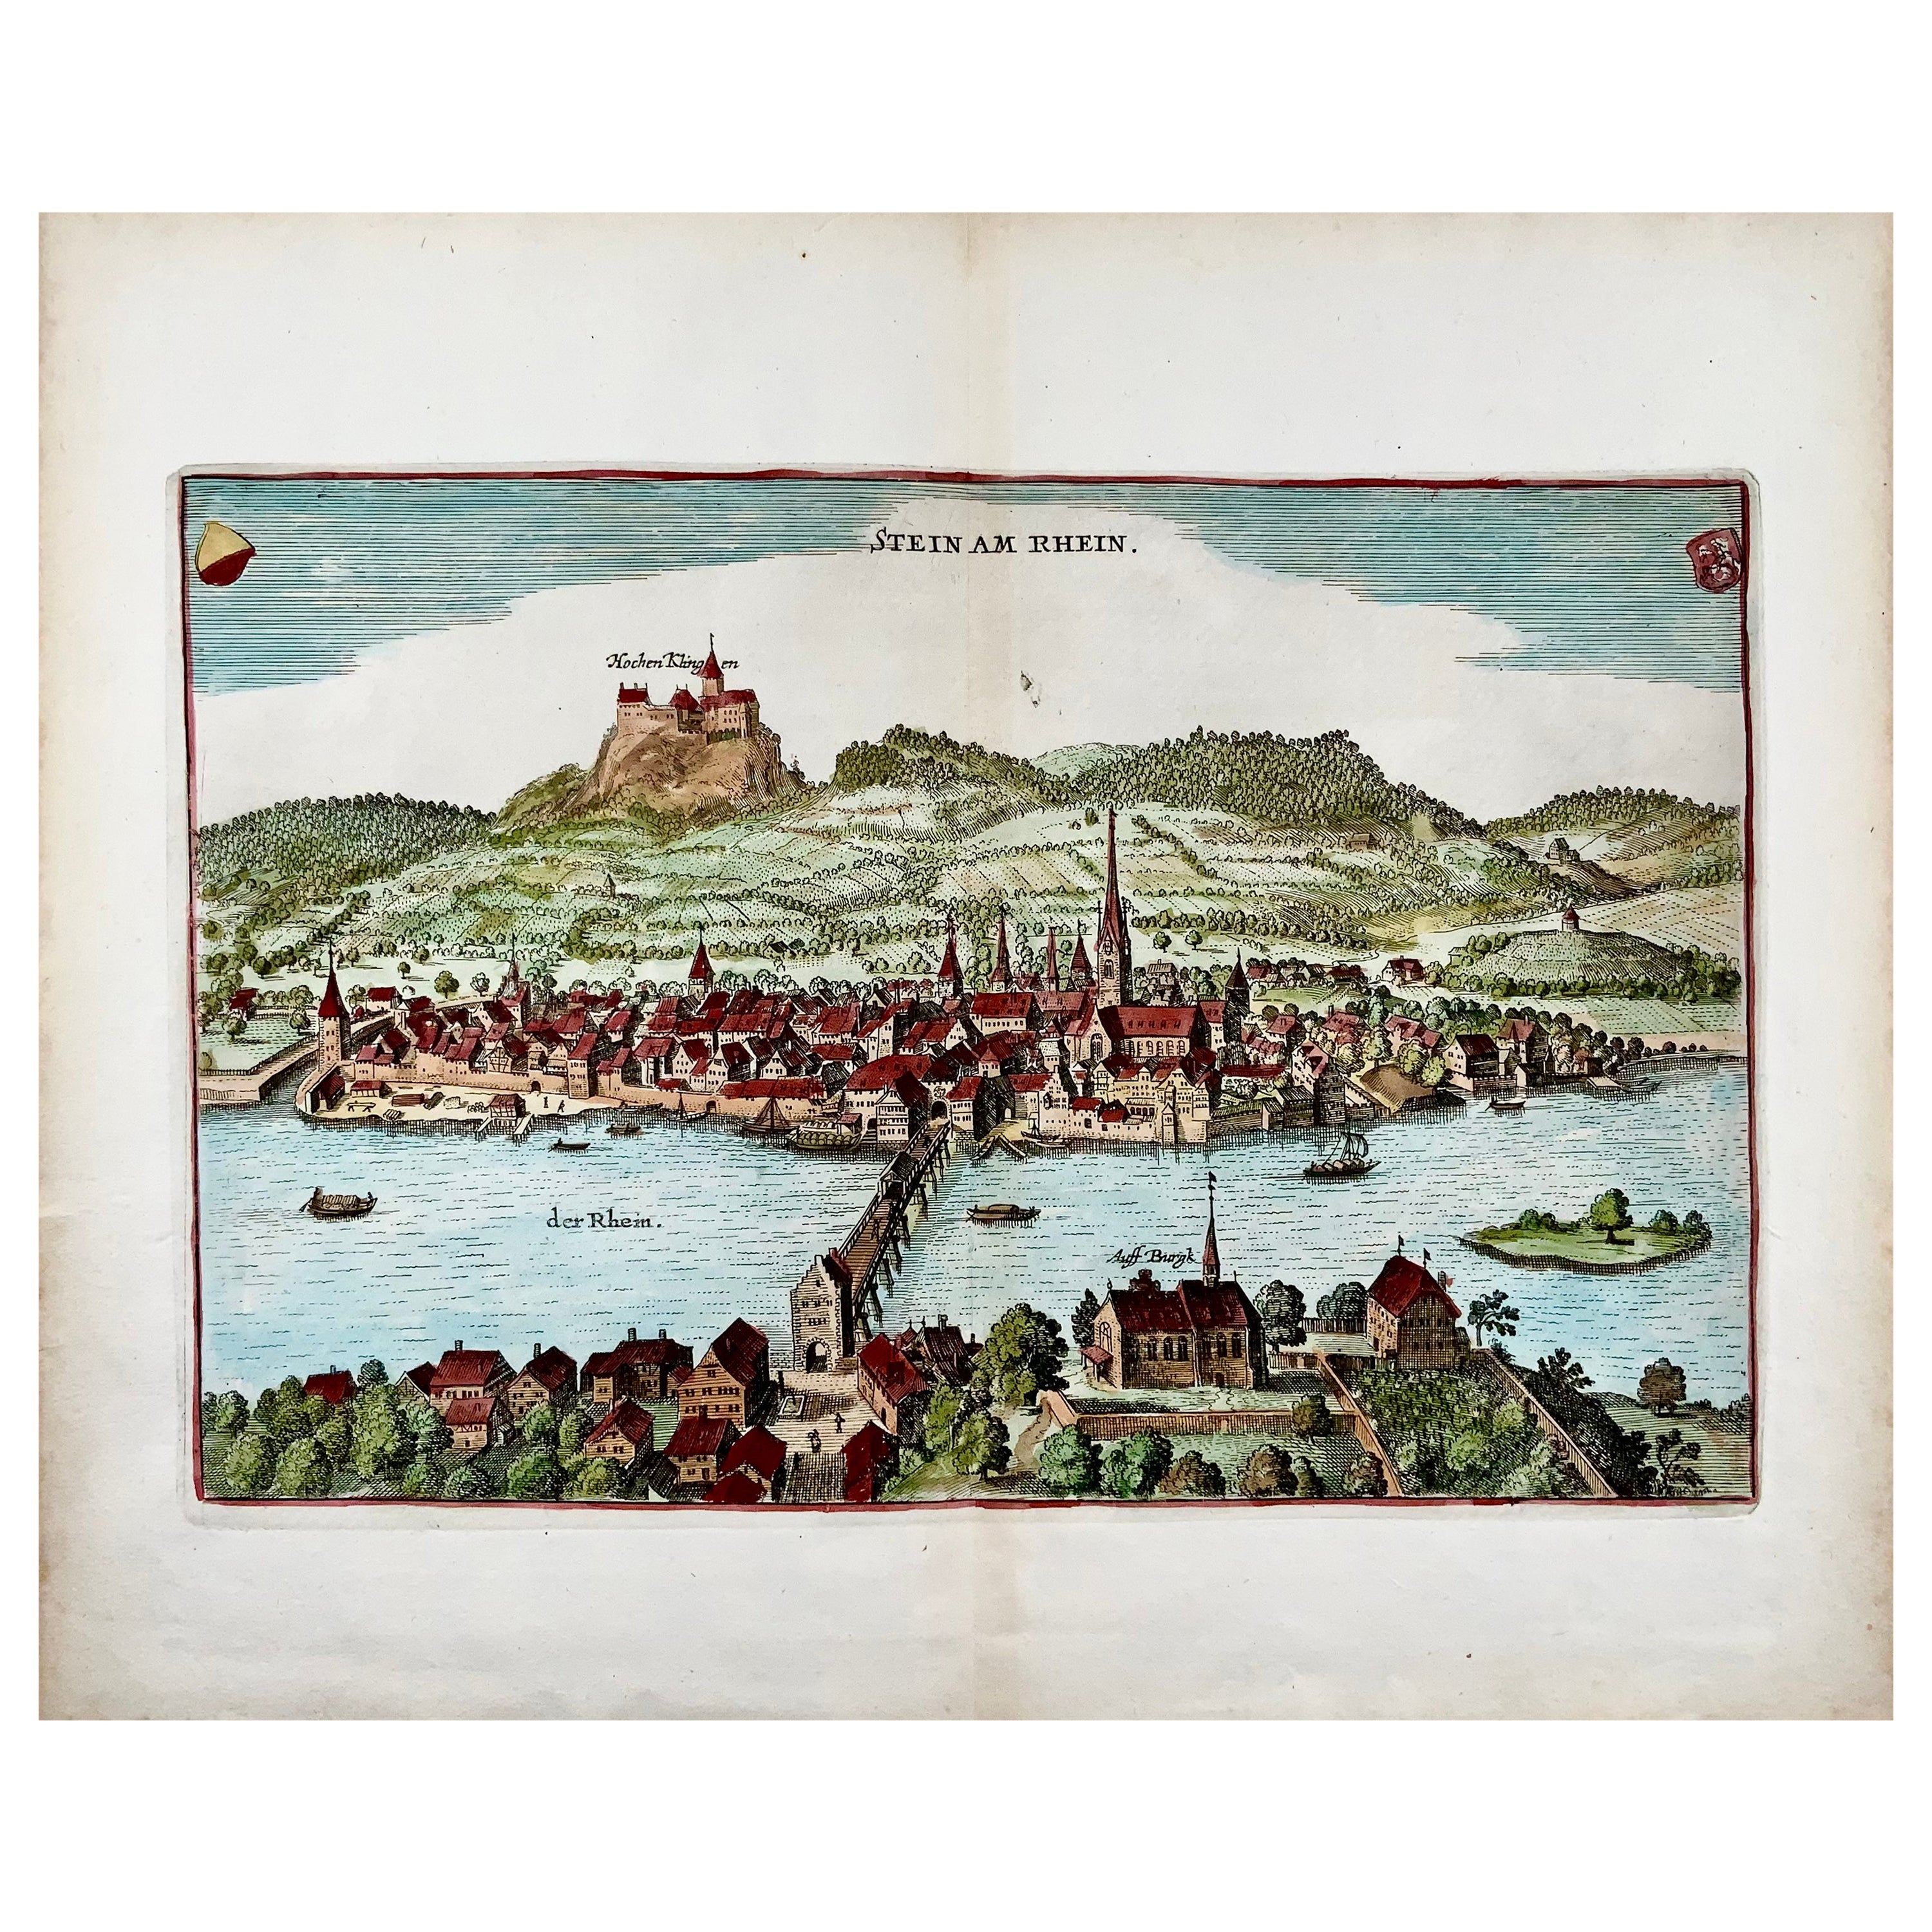 Merian, Stein am Rhein, large double folio, Switzerland For Sale